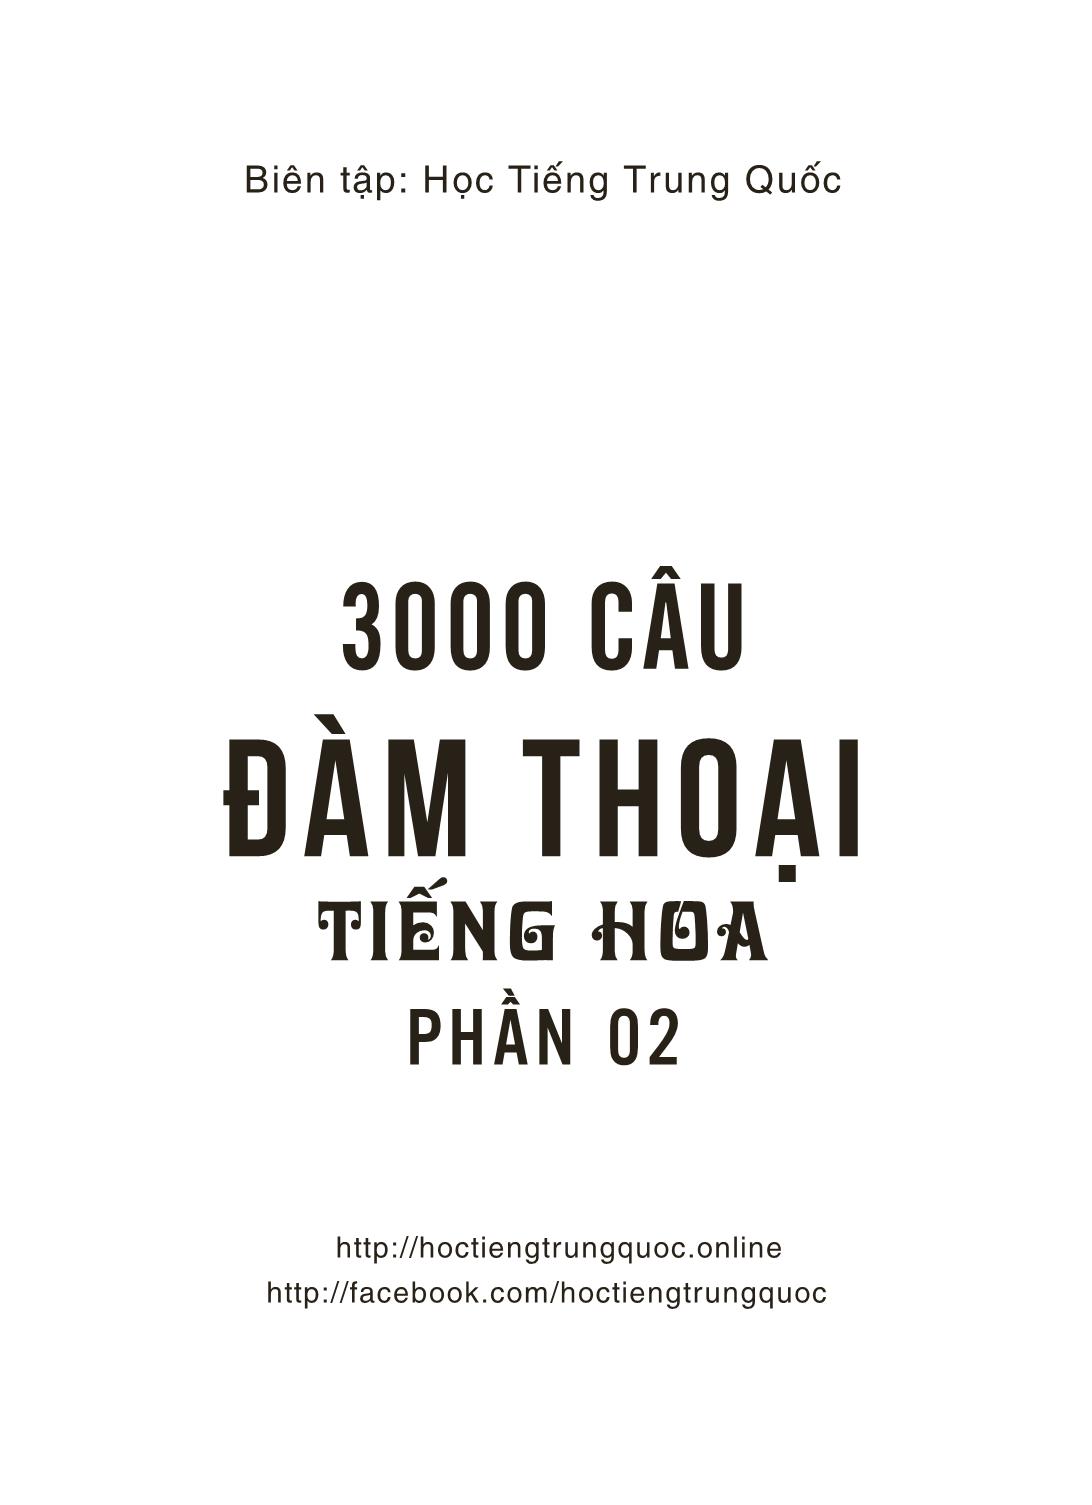 3000 Câu đàm thoại tiếng Hoa - Phần 2 trang 2